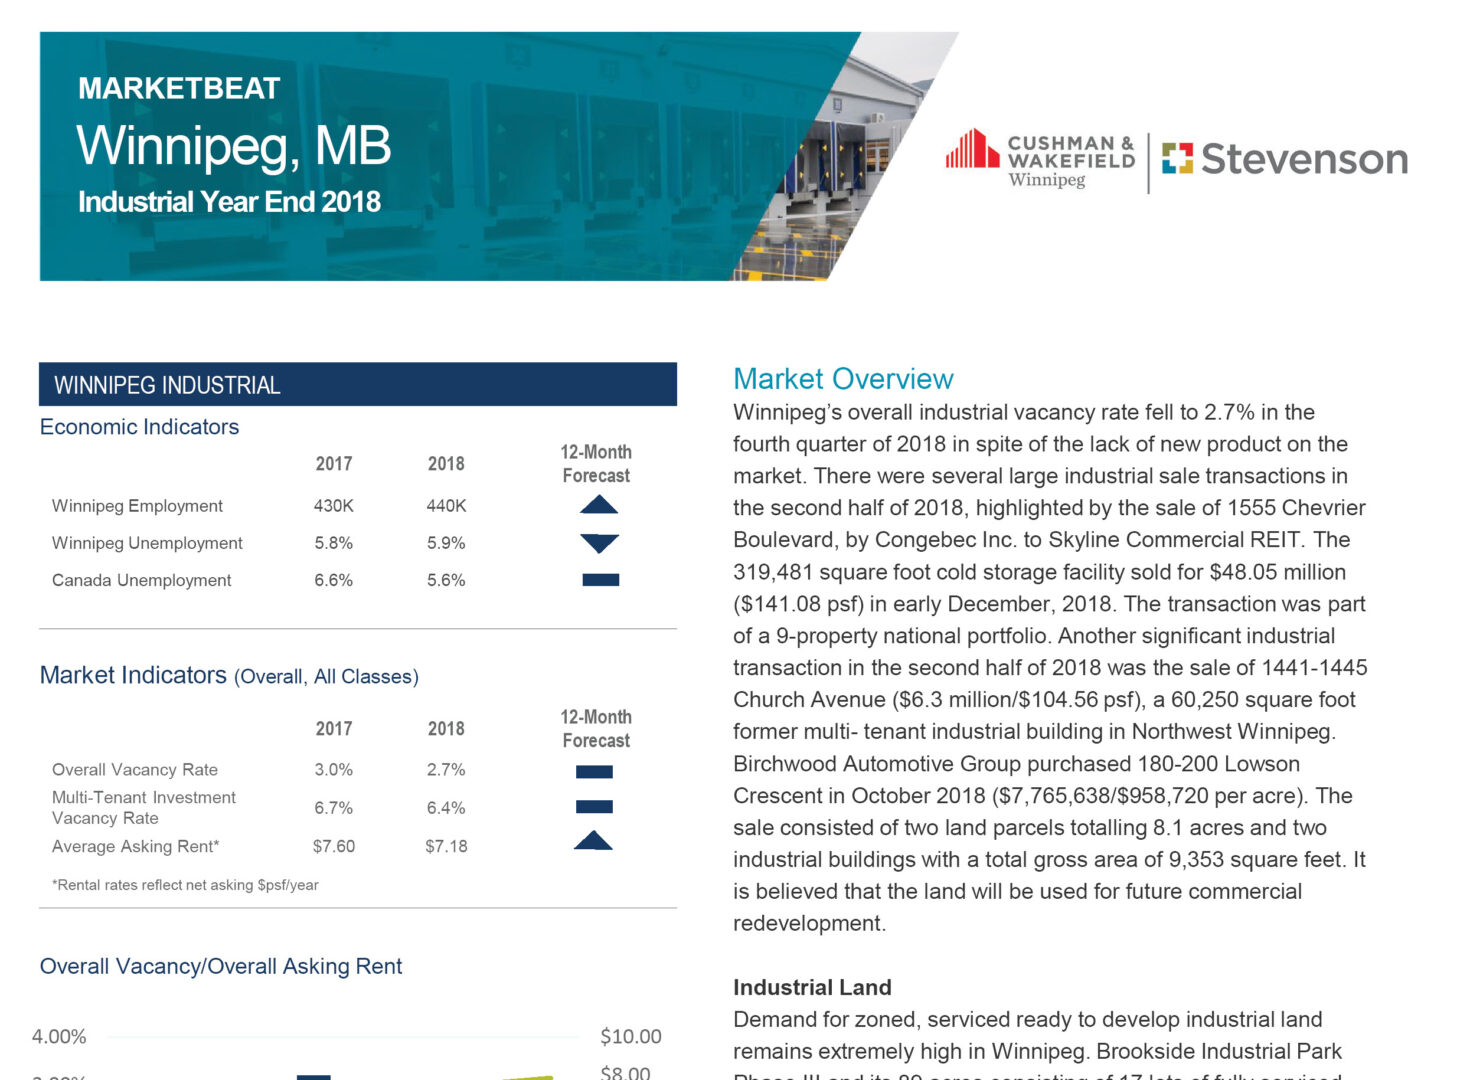 Marketbeat industrial year-end report in winnipeg, cws cushman wakefield Stevenson